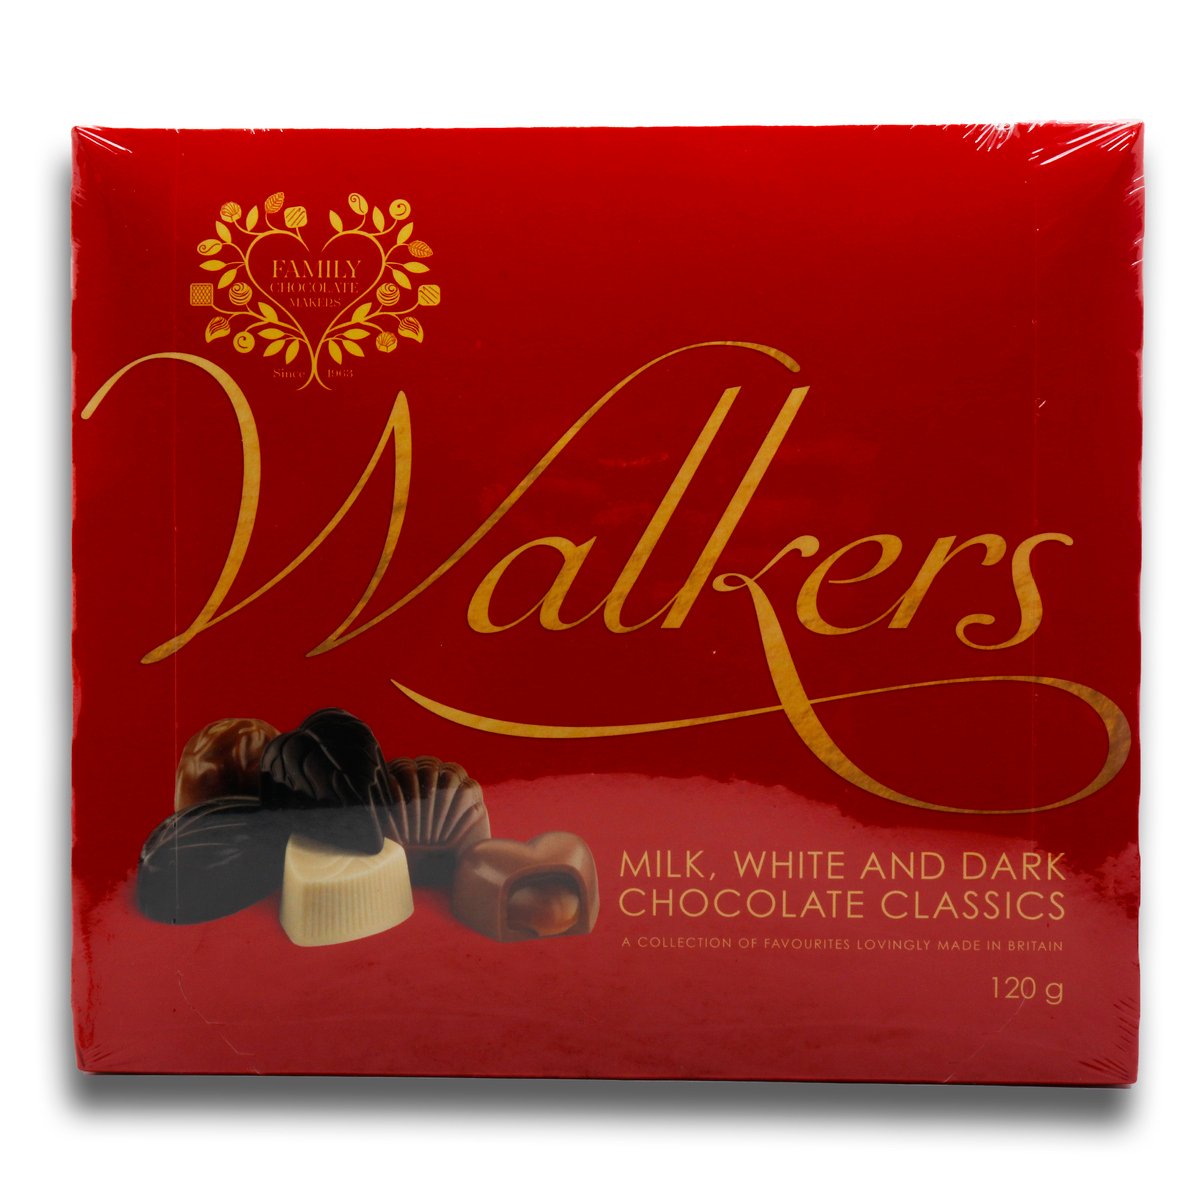 Walkers Milk, White And Dark Chocolate Classics 120 g